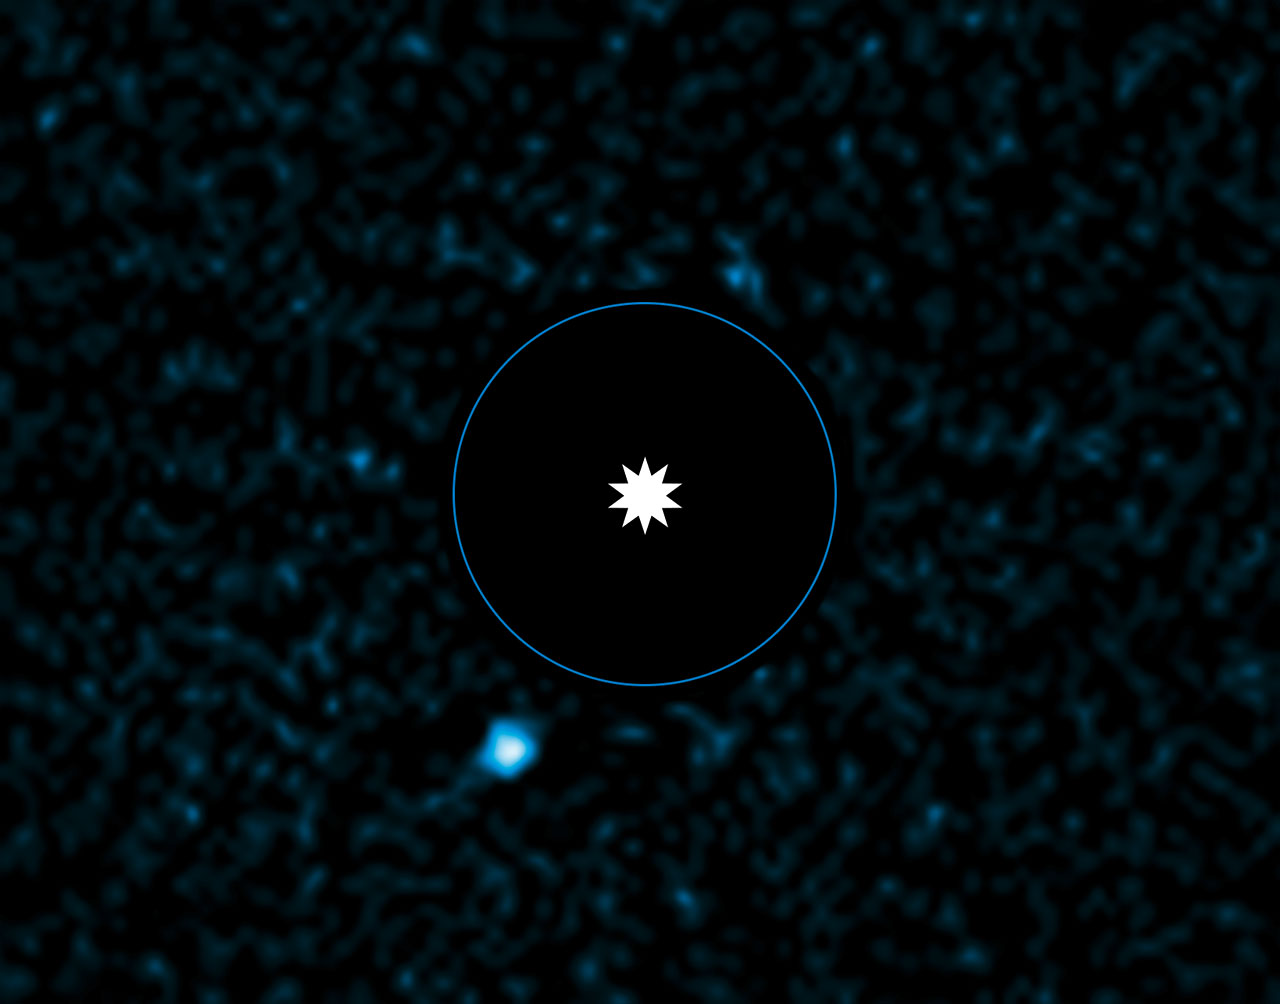 Cette image acquise par le VLT de l'ESO montre l’exoplanète nouvellement découverte HD 95 086 b, à proximité de son étoile hôte. Les observations ont été effectuées au moyen de Naco, un instrument d'optique adaptative du VLT en lumière infrarouge, et en utilisant la technique d'imagerie différentielle qui augmente le contraste entre la planète et son étoile hôte de brillance élevée. L'étoile a été supprimée de l'image pendant sa conception afin de faire ressortir la faible exoplanète et sa position est indiquée. L'exoplanète apparaît en bas à gauche. Le cercle bleu correspond à la taille de l'orbite de Neptune dans le Système solaire. © J. Rameau, ESO